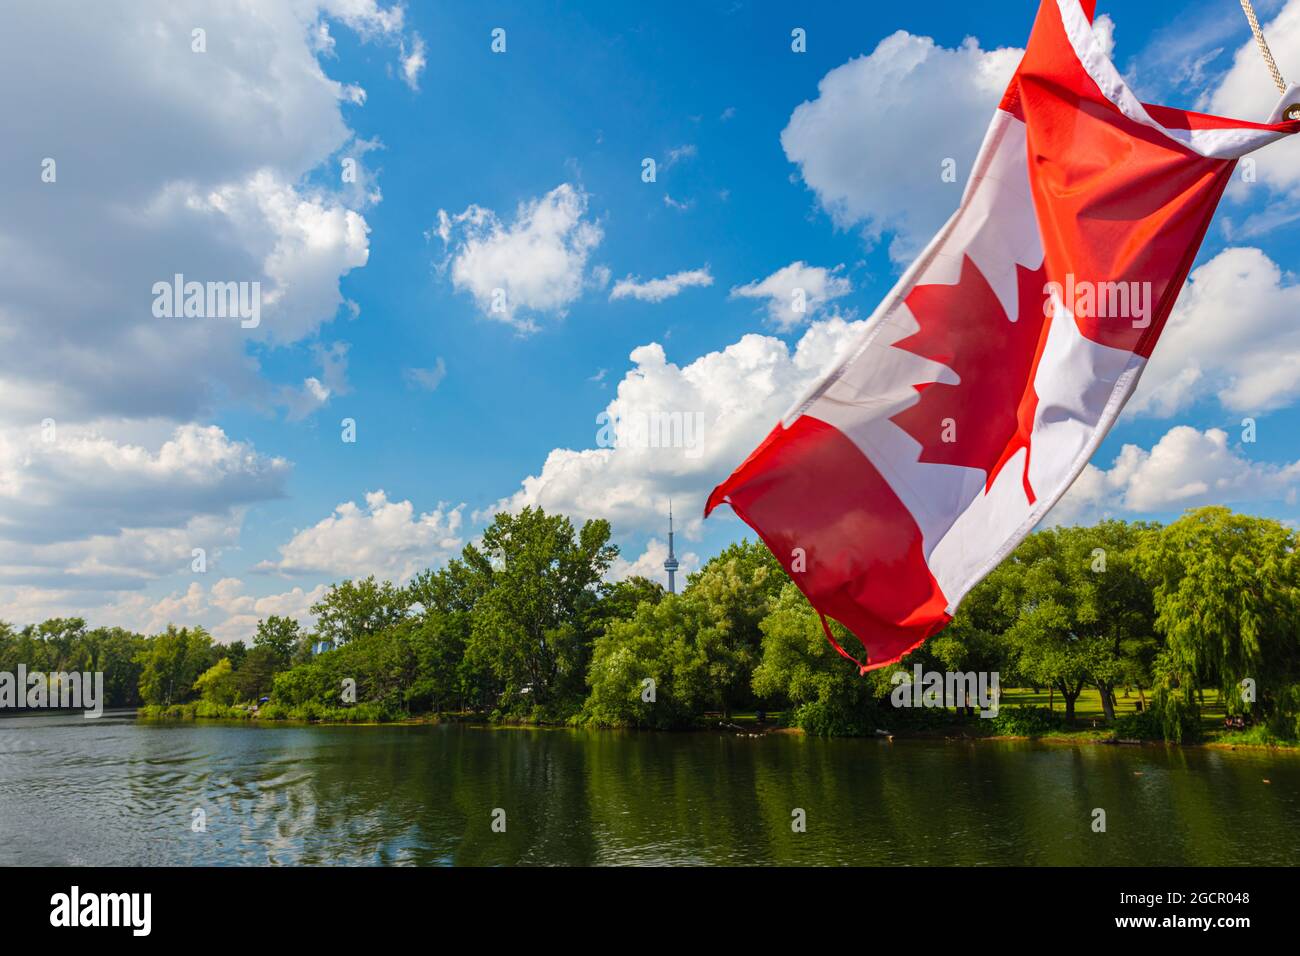 Drapeau canadien sur un bateau de croisière dans les îles de la ville de Toronto. Le drapeau rouge et blanc du Canada avec la feuille d'érable au centre. Le CN Banque D'Images